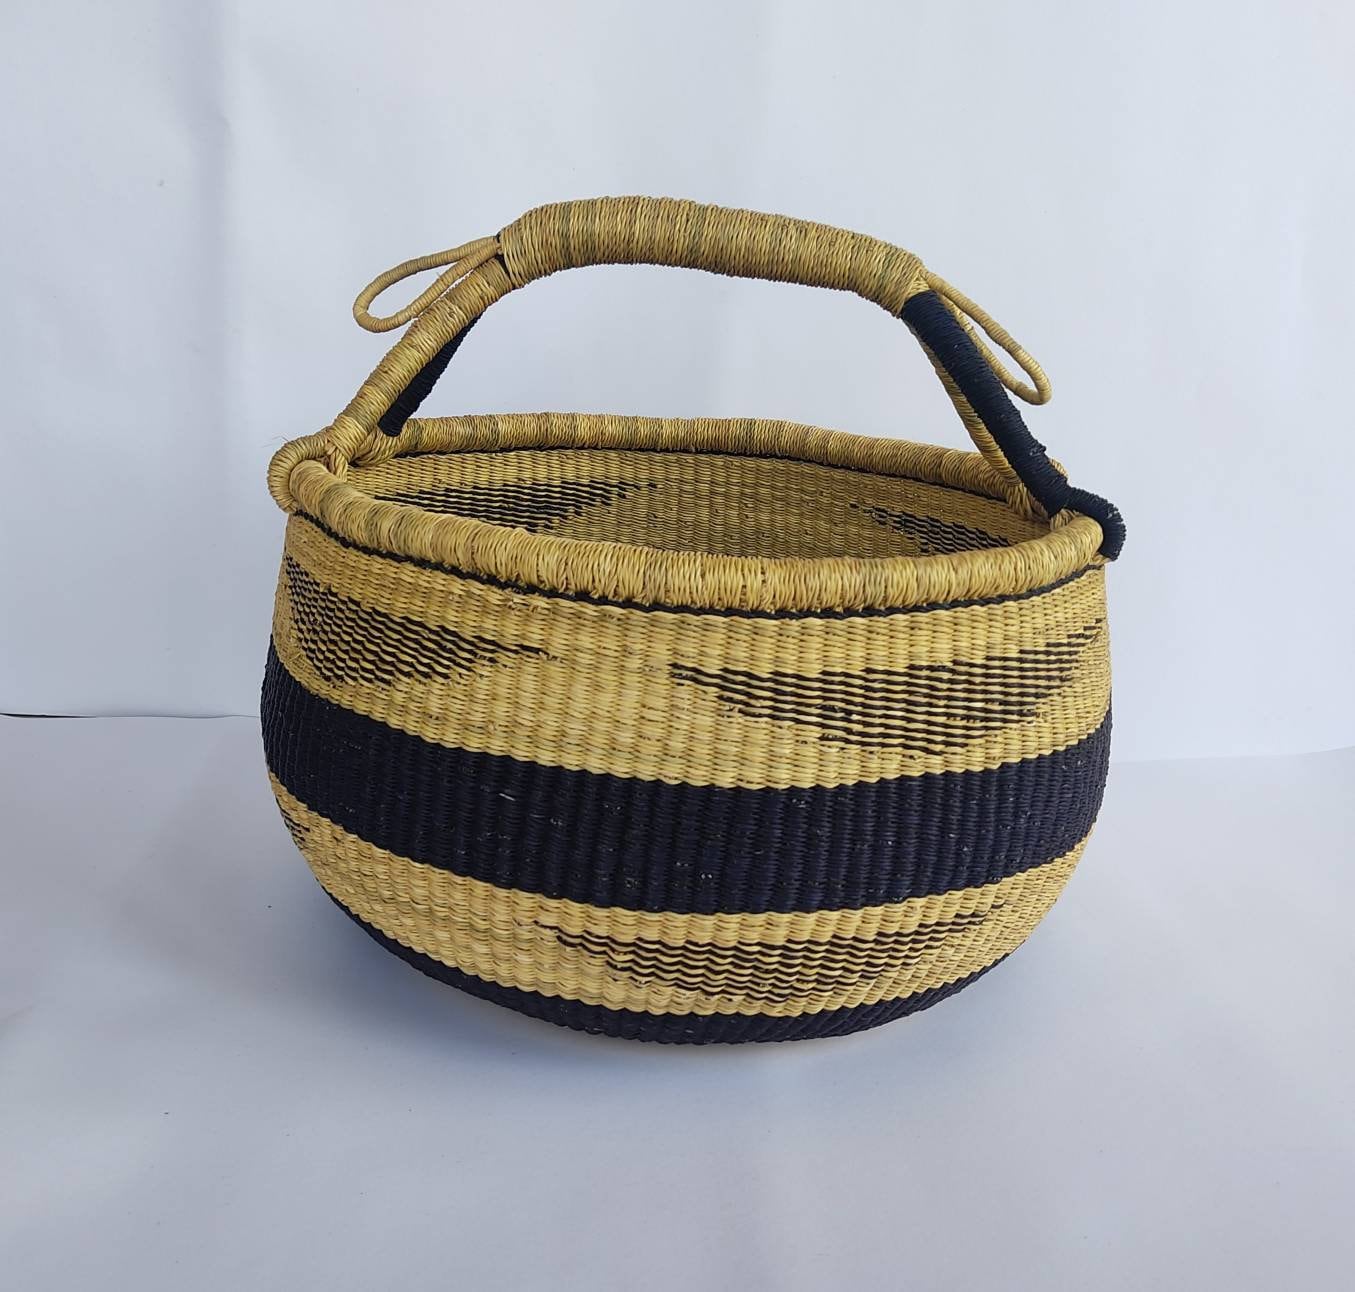 Large storage Basket | Bolga Basket | Baby gift basket | Bolga market basket | Woven Basket | Straw bag | African Basket - AfricanheritageGH